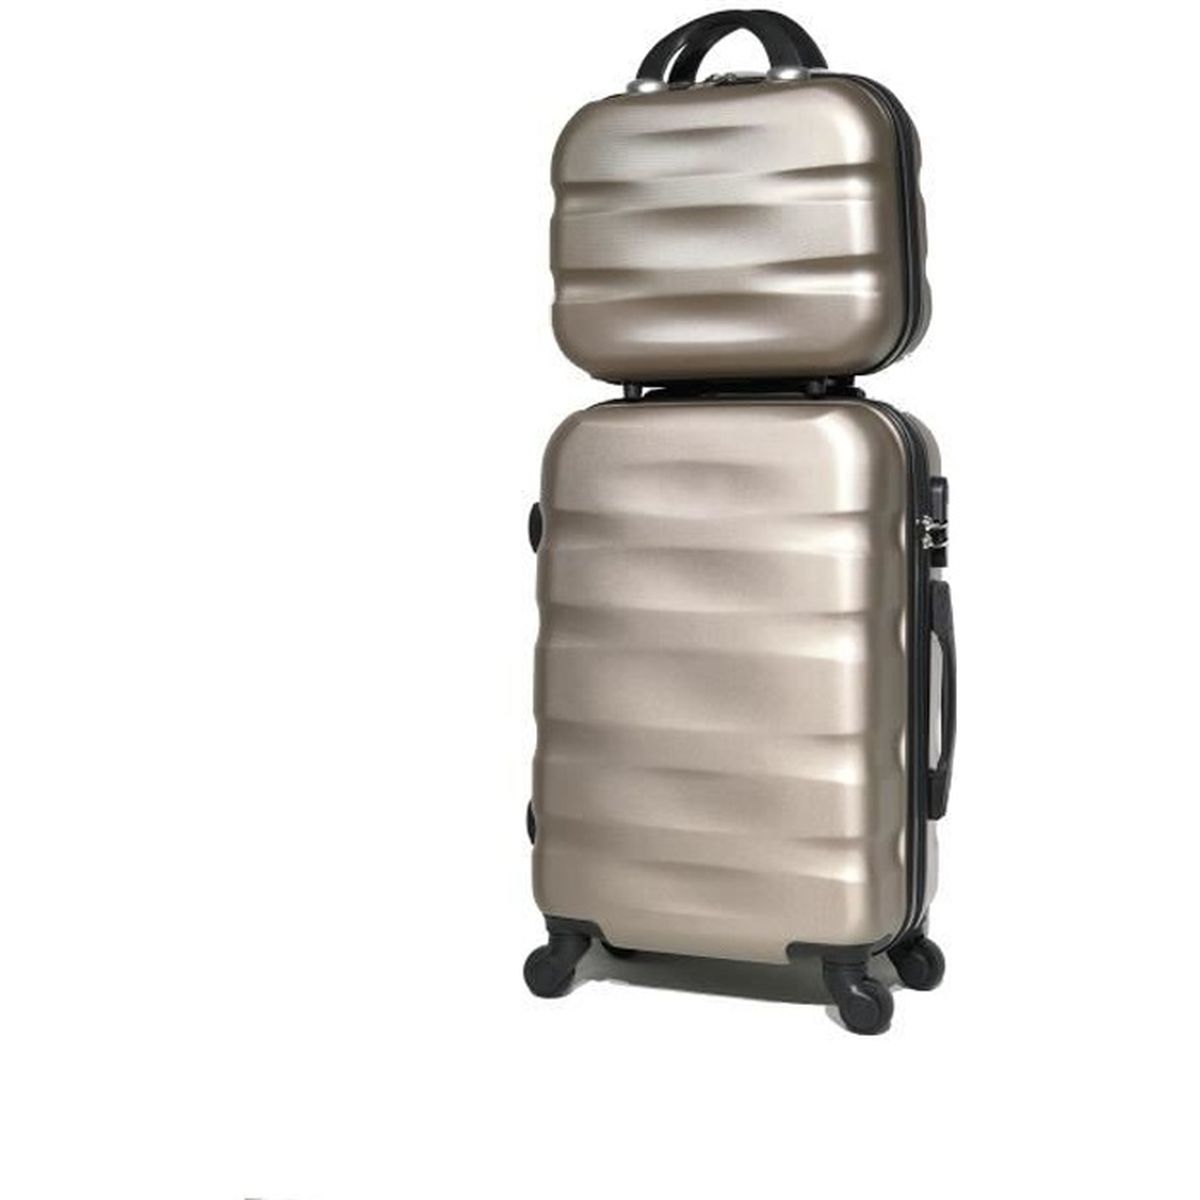 Monzana ® Voyage valise coque rigide valise set 4 roulettes trolley choix de couleur PC ABS 